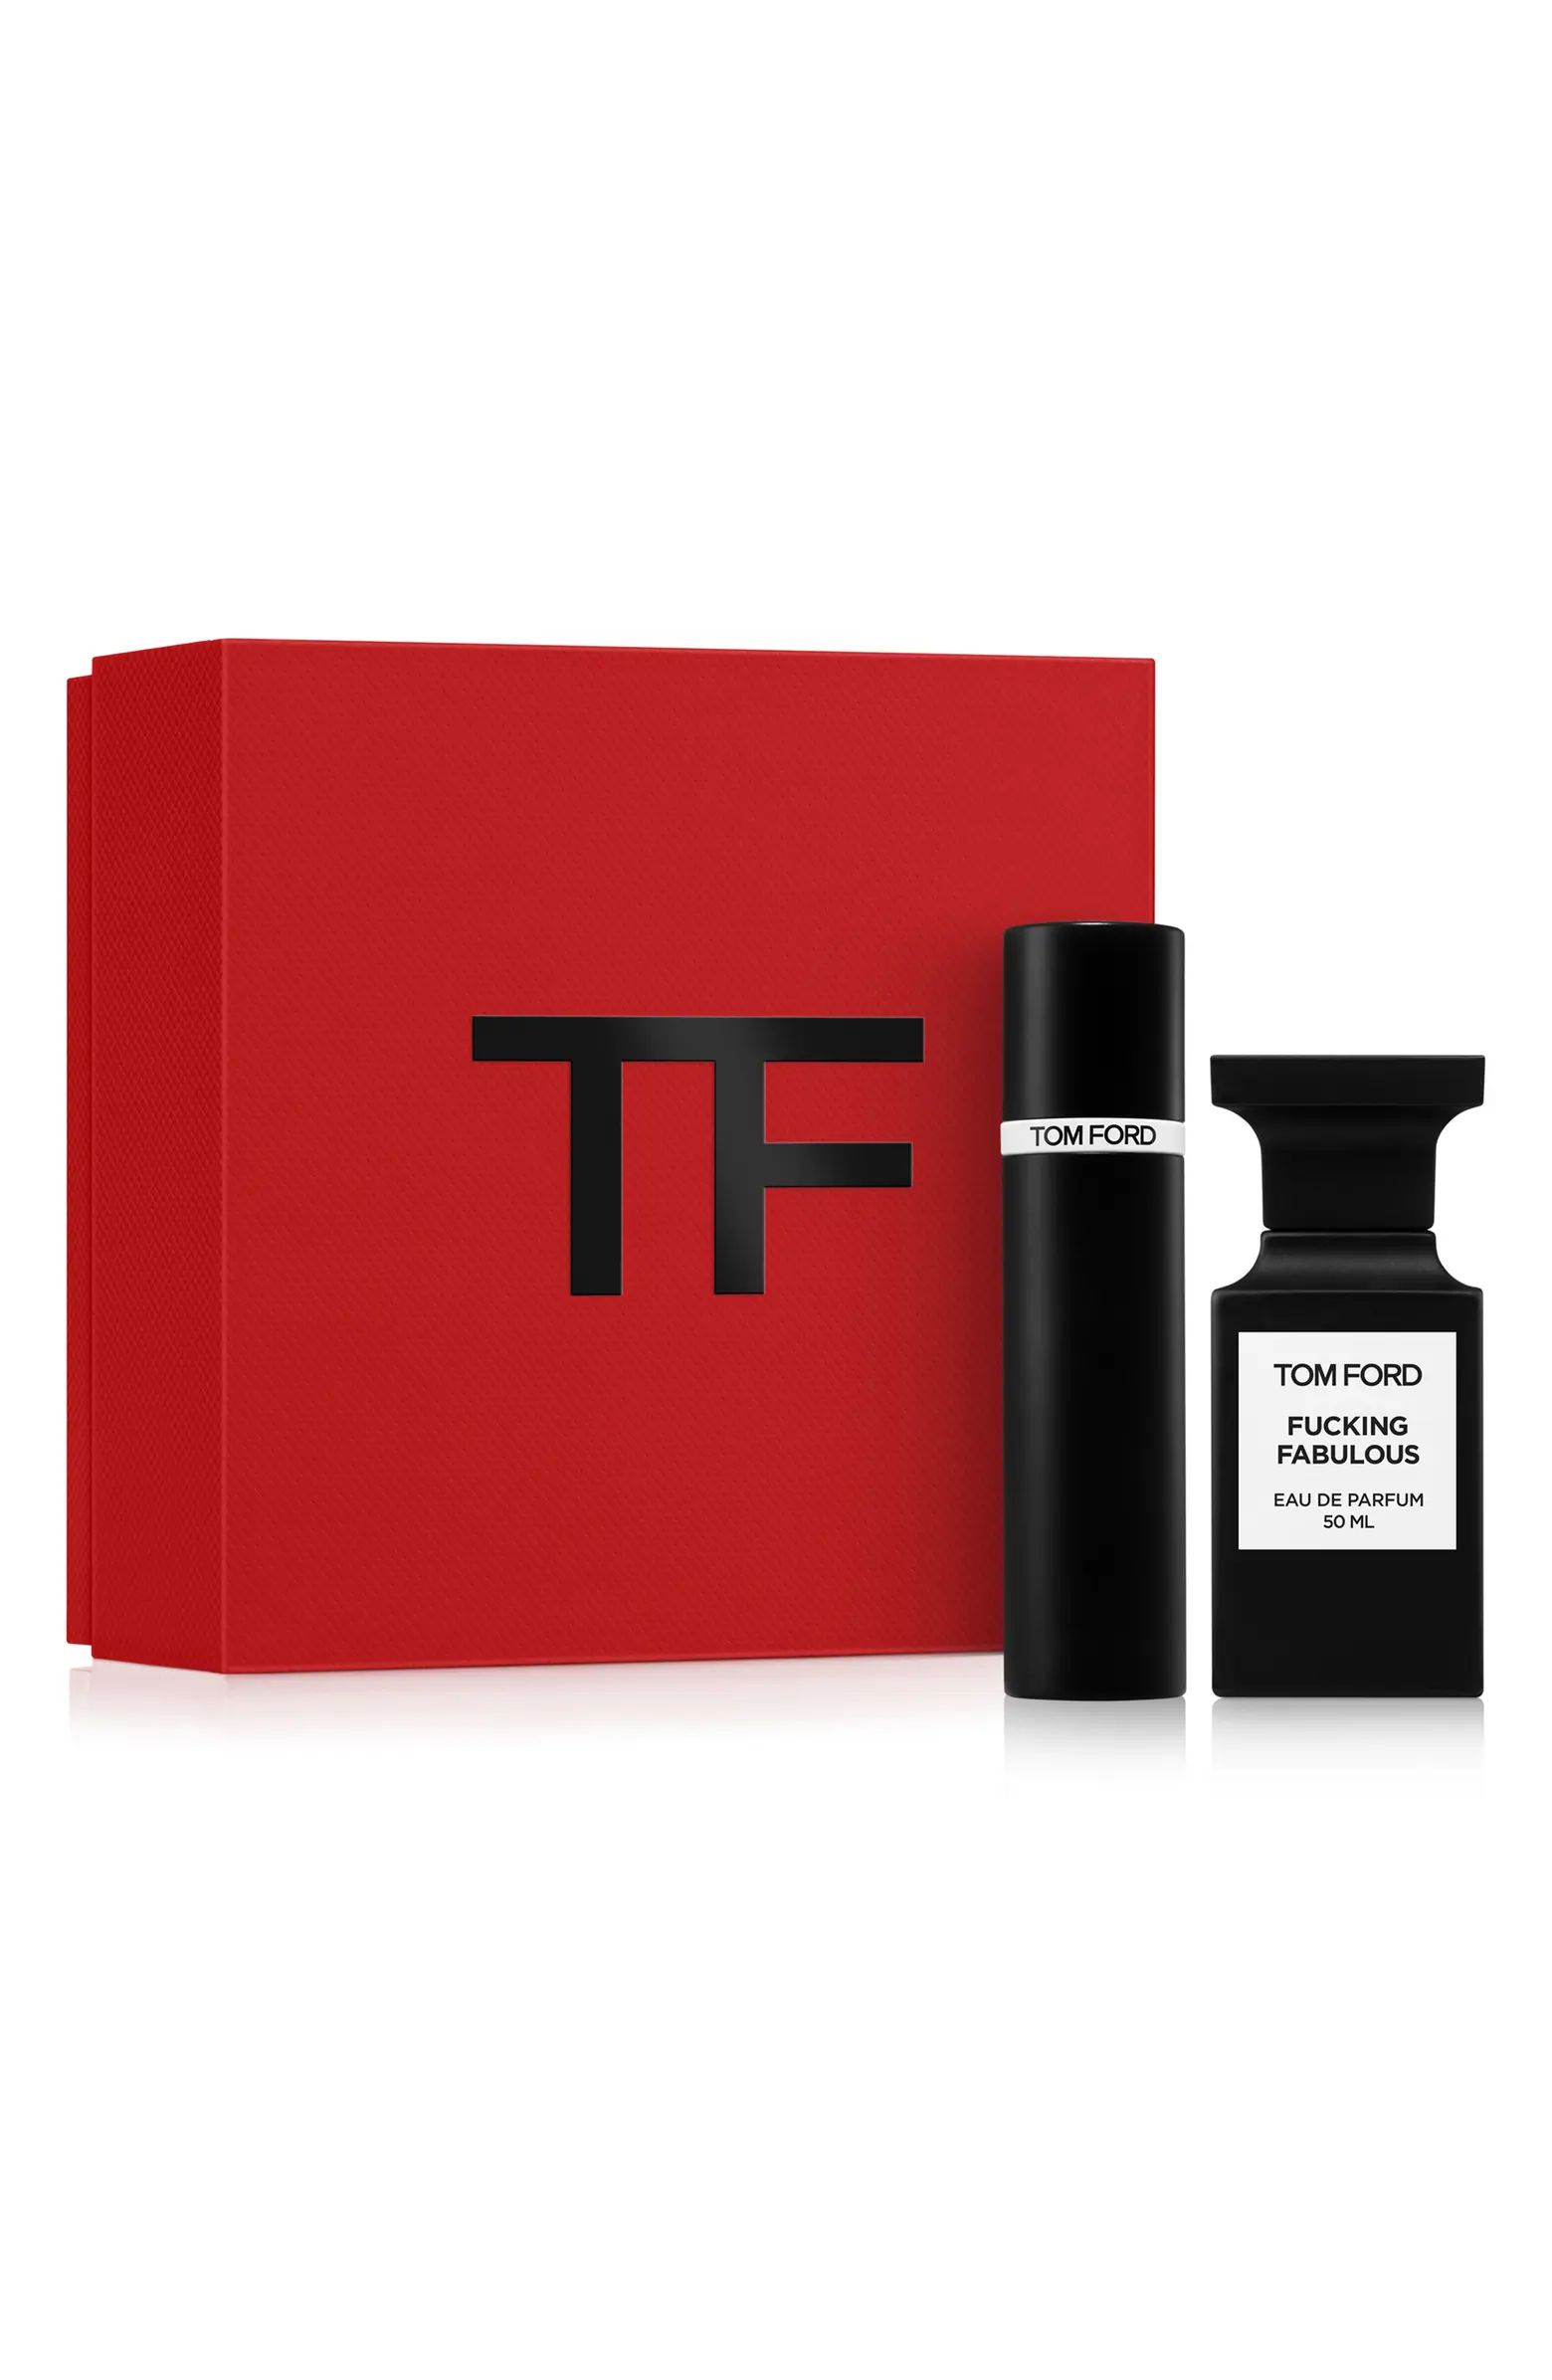 Private Blend Fabulous Eau de Parfum Set with Atomizer $450 Value | Nordstrom